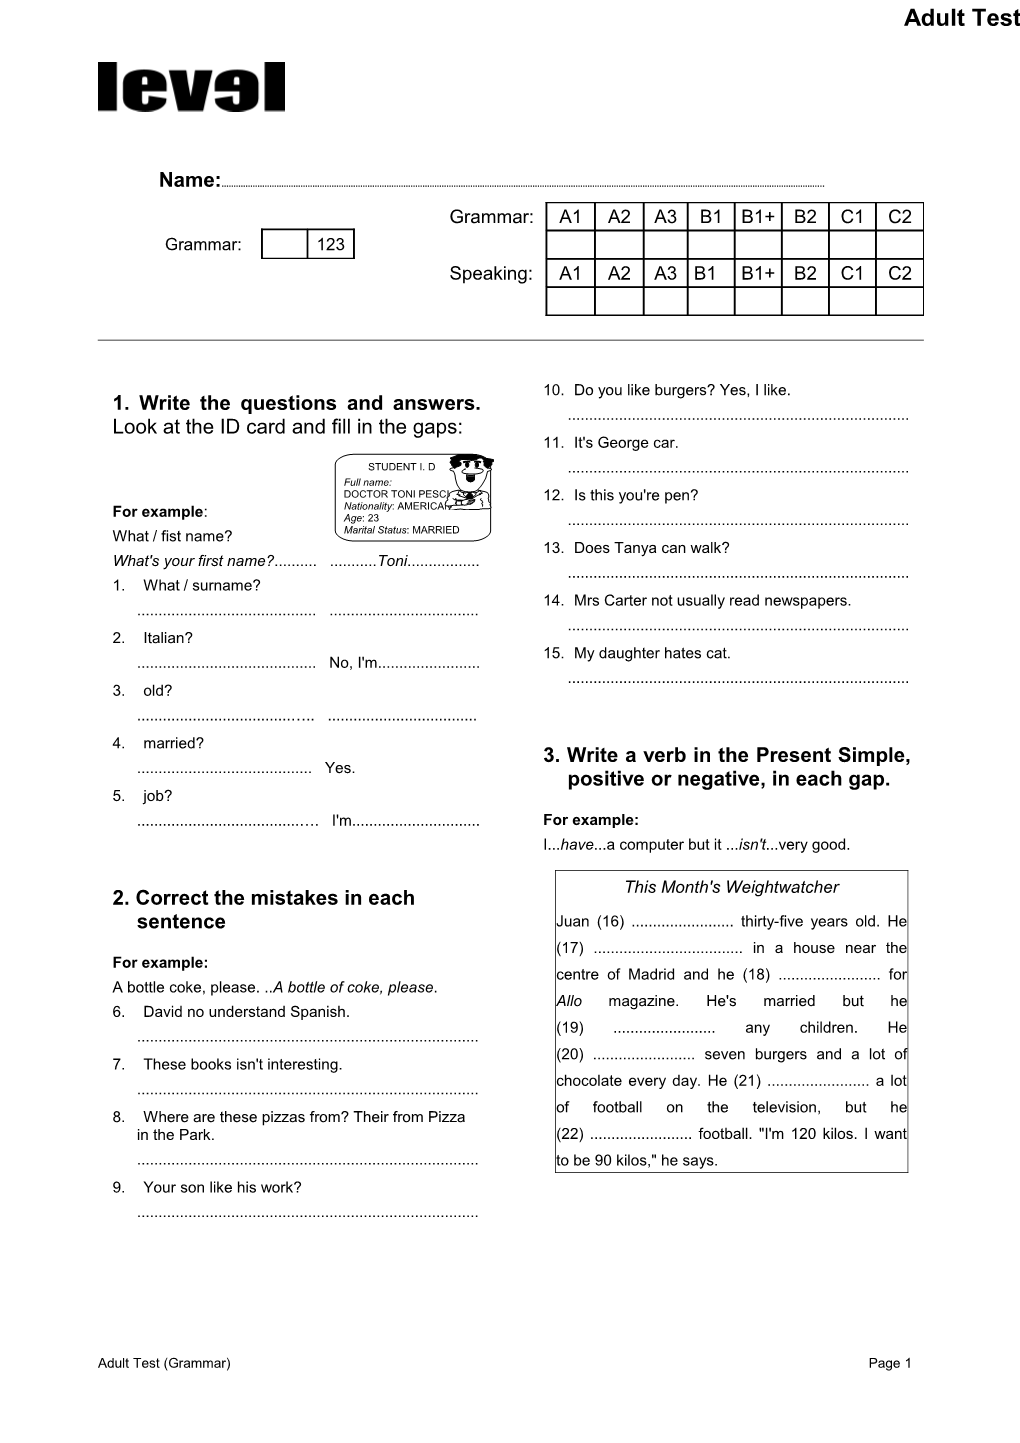 Adult Test (Grammar)Page 1